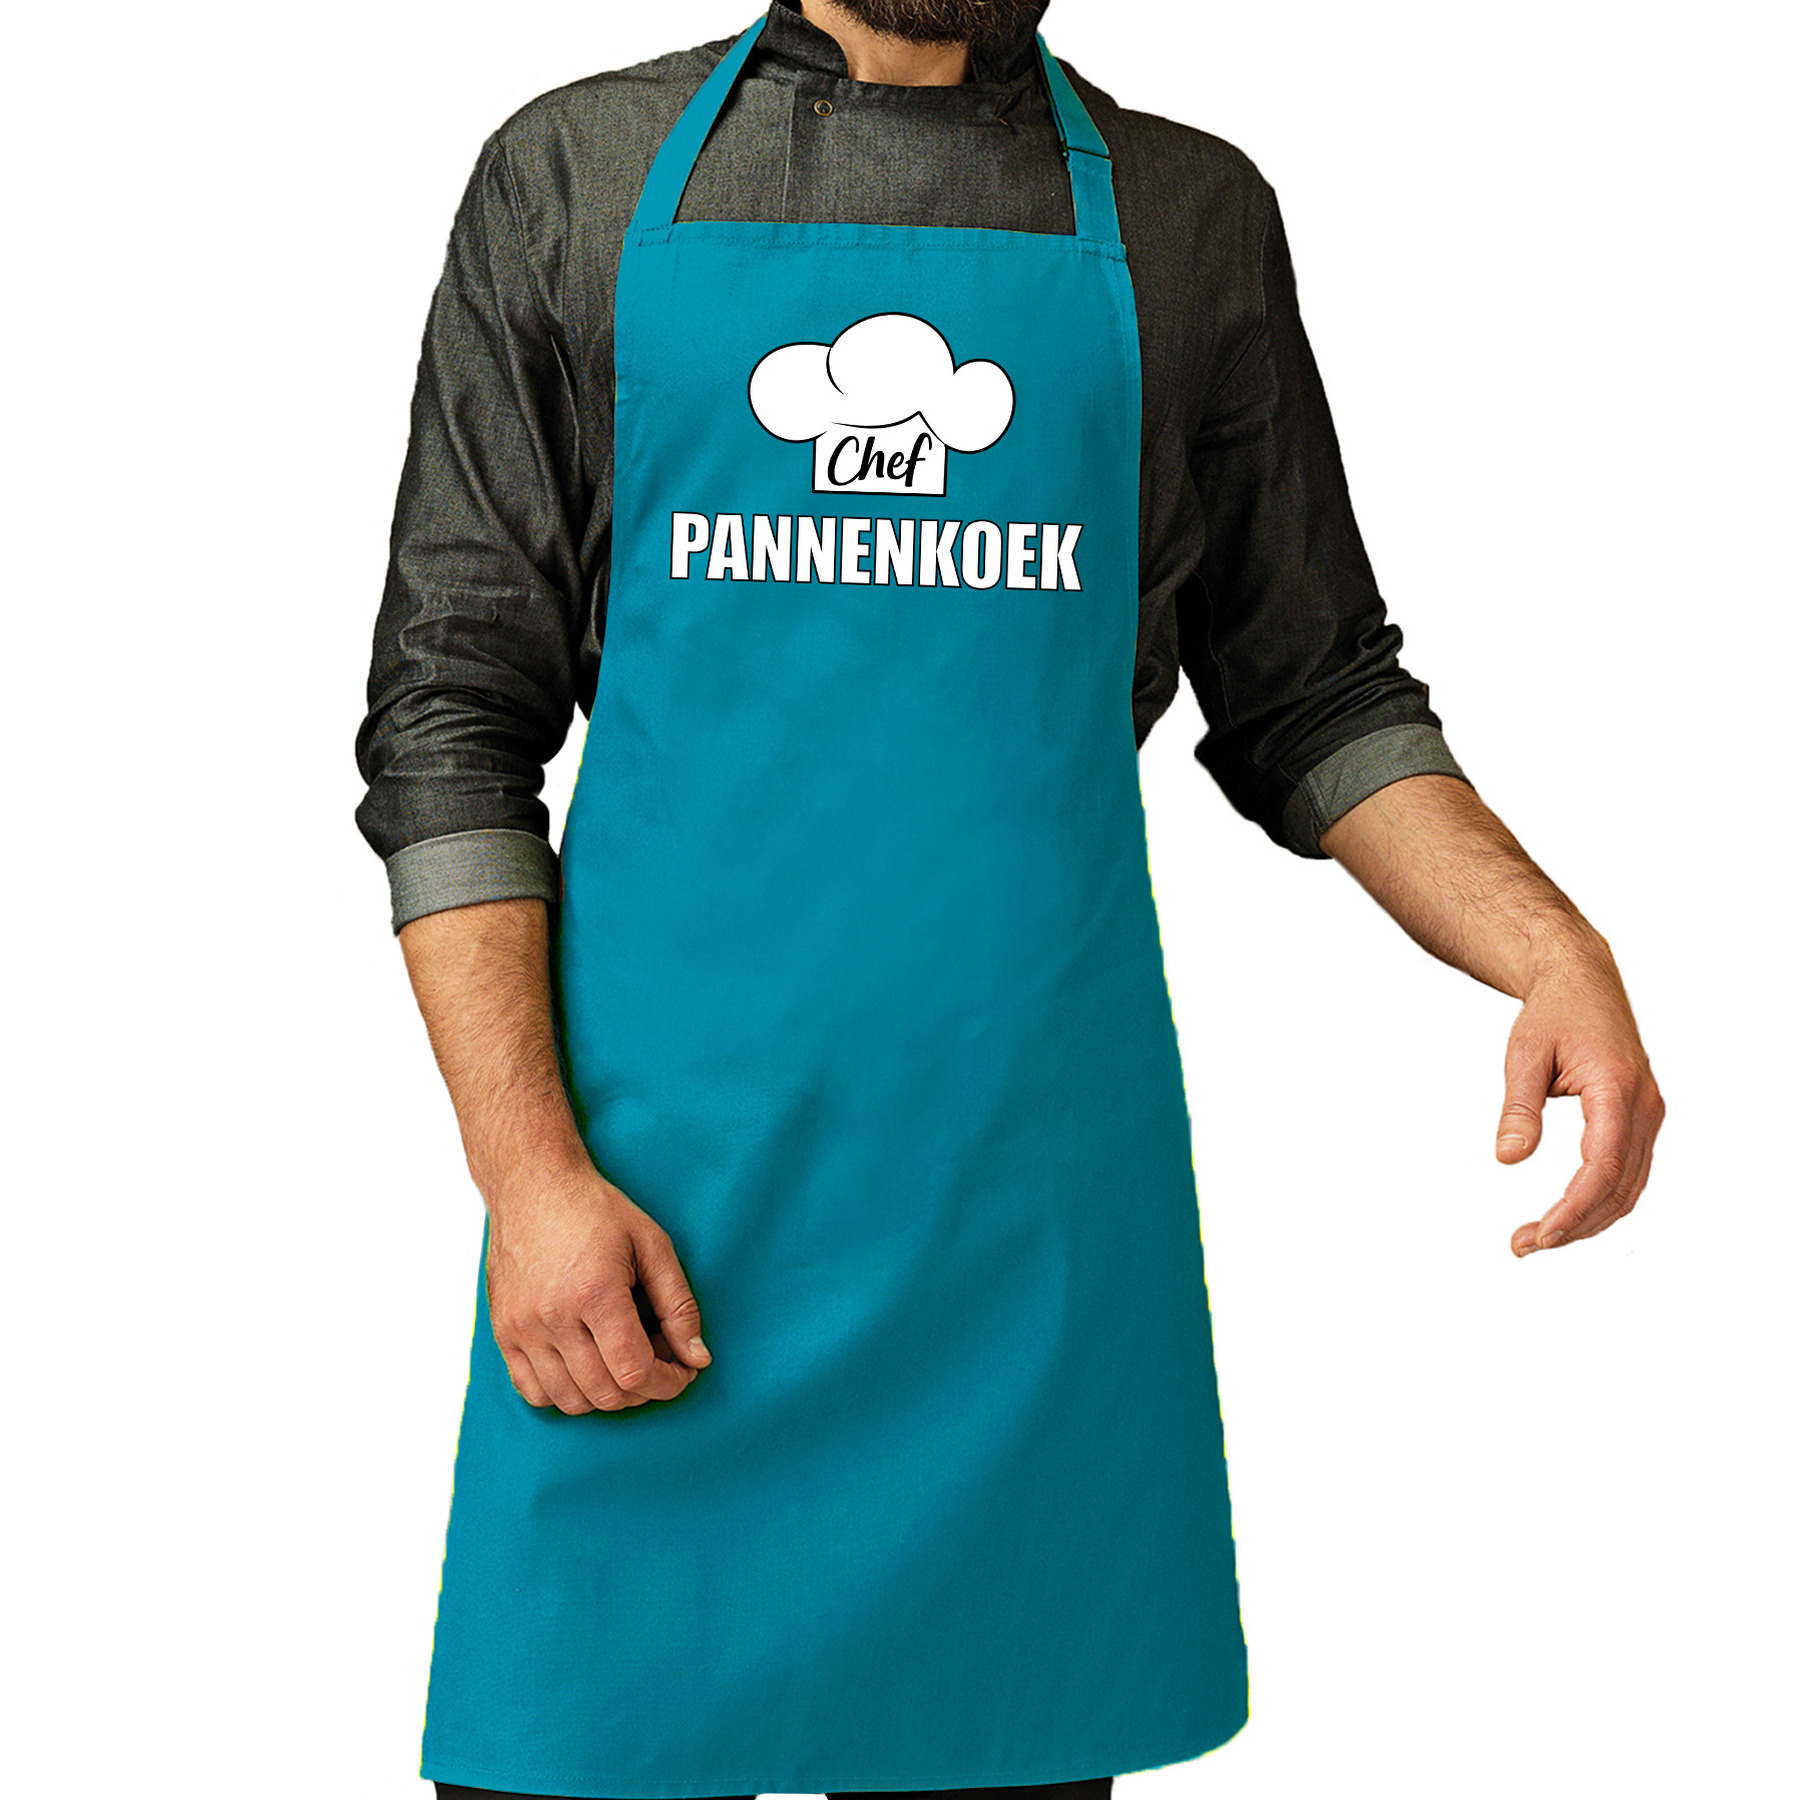 Chef pannenkoek schort - keukenschort turquoise heren